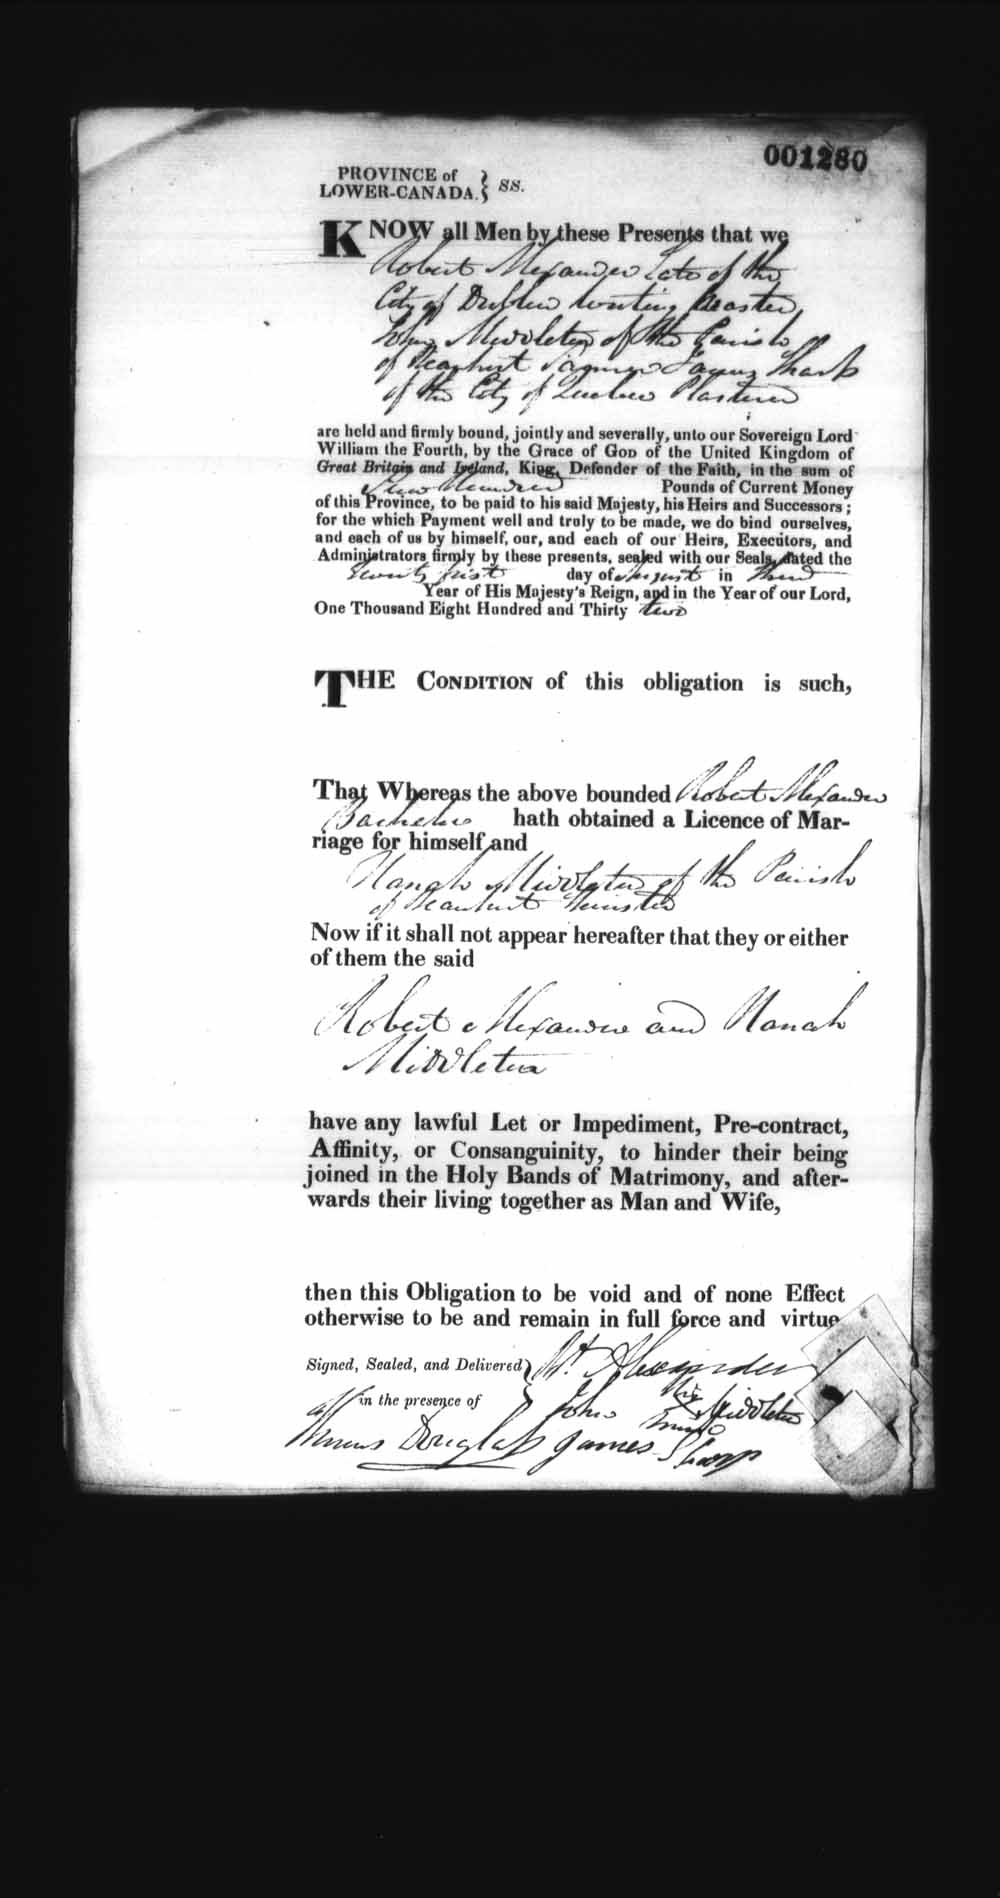 Page numérisé de Cautionnements de mariages pour le Haut-Canada et le Bas-Canada (1779-1865) pour l'image numéro: e008237456